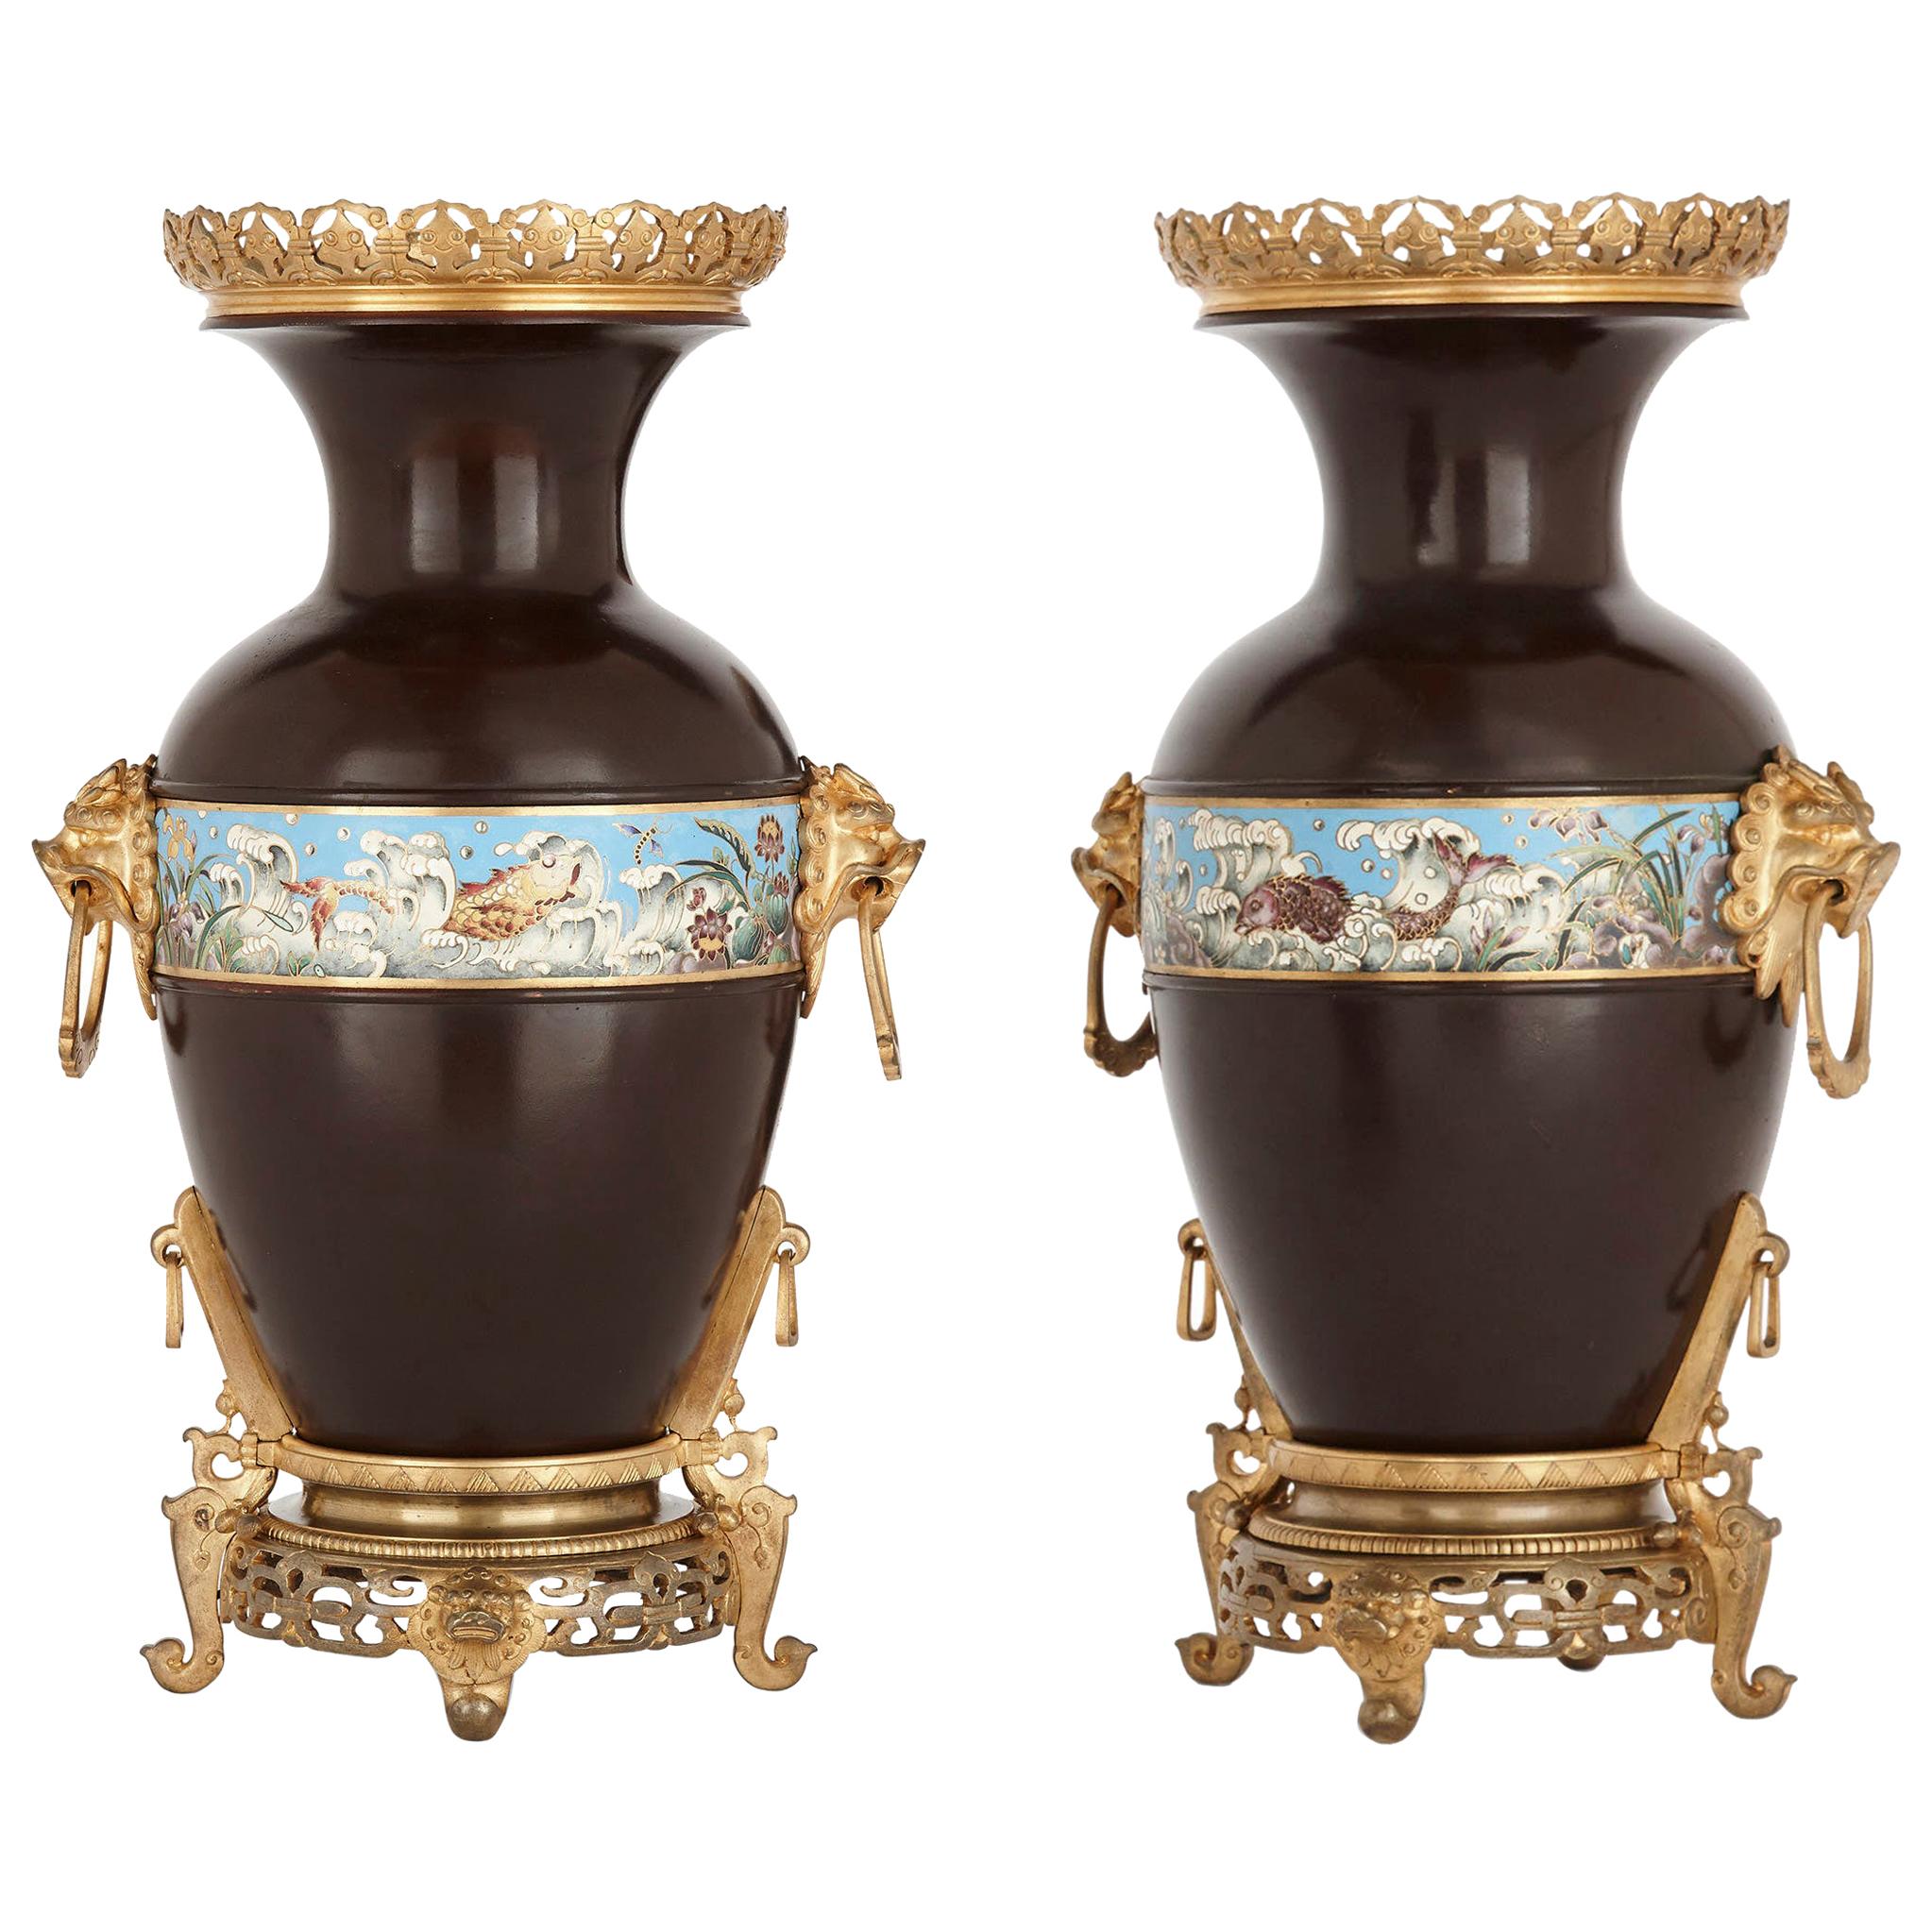 Deux urnes de style chinois en bronze émaillé:: doré et patiné